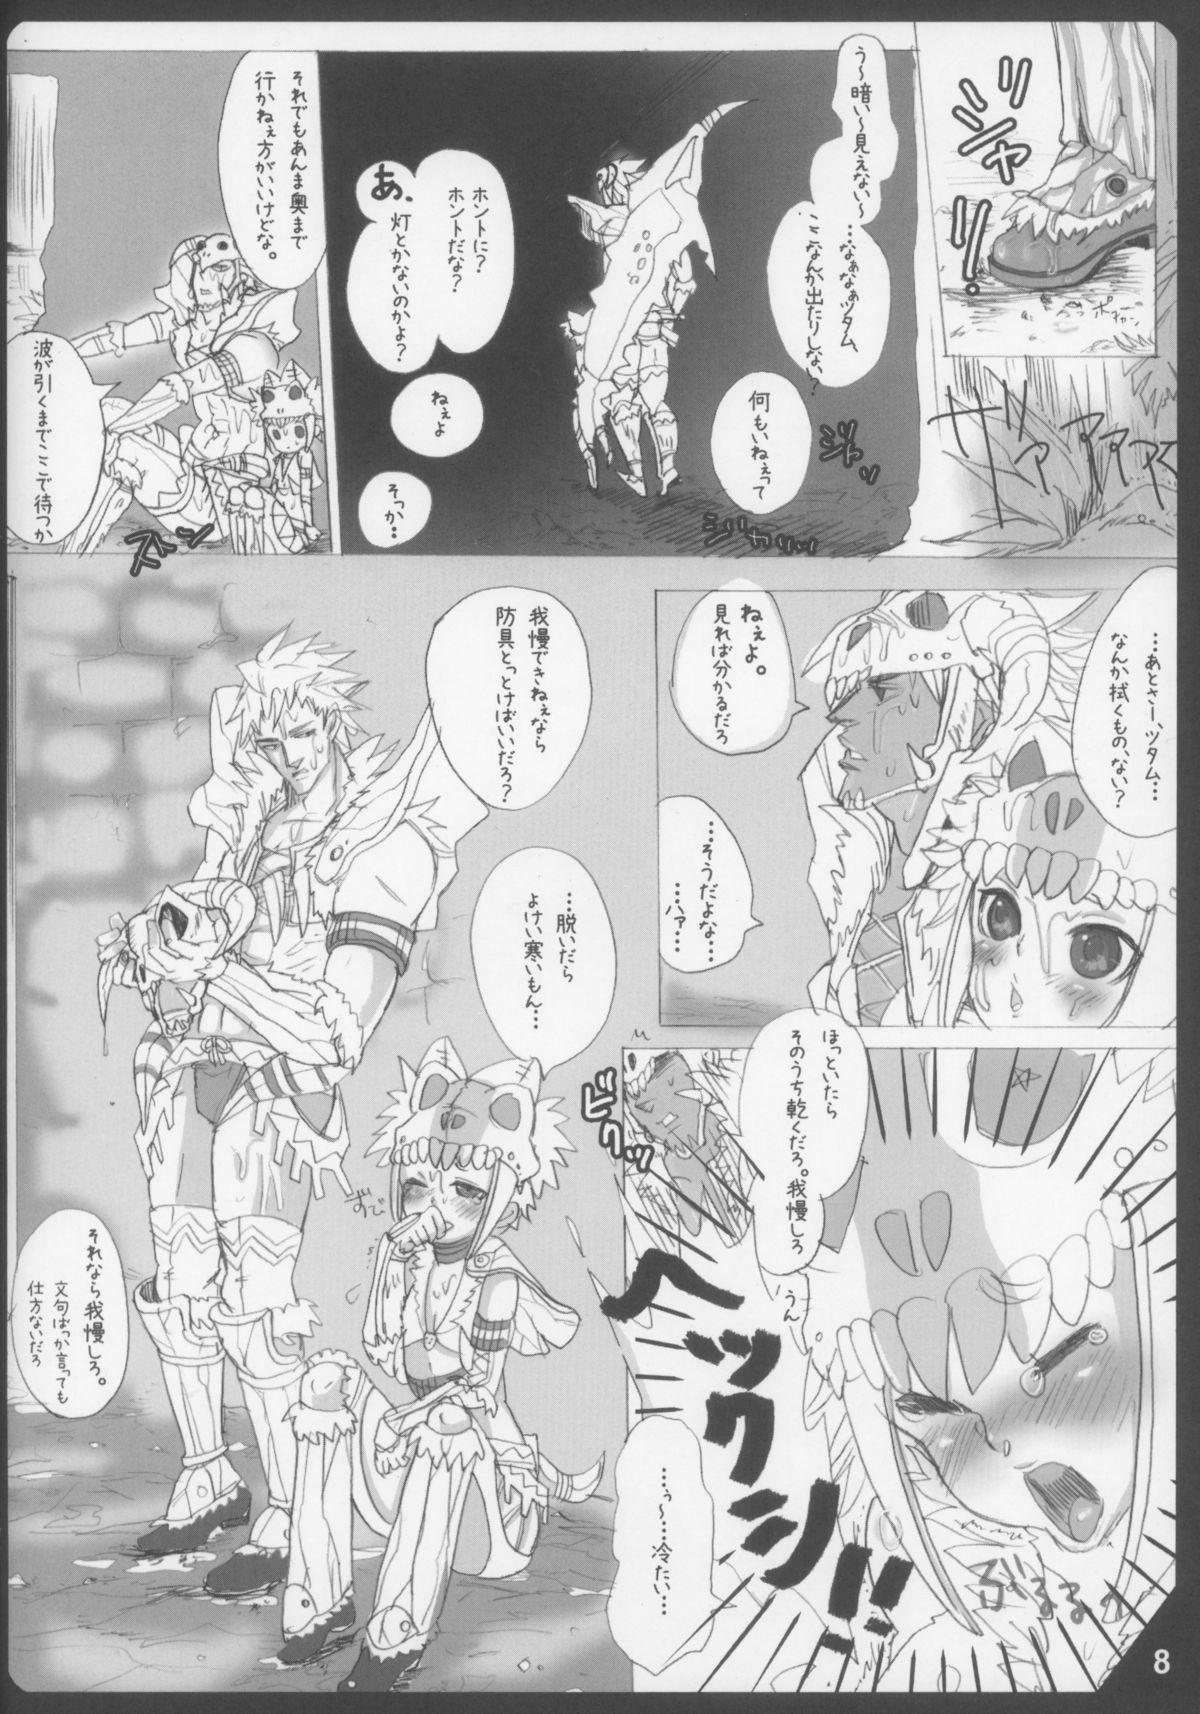 Man Mitsurin no Arashi Daisakusen - Monster hunter Shesafreak - Page 8